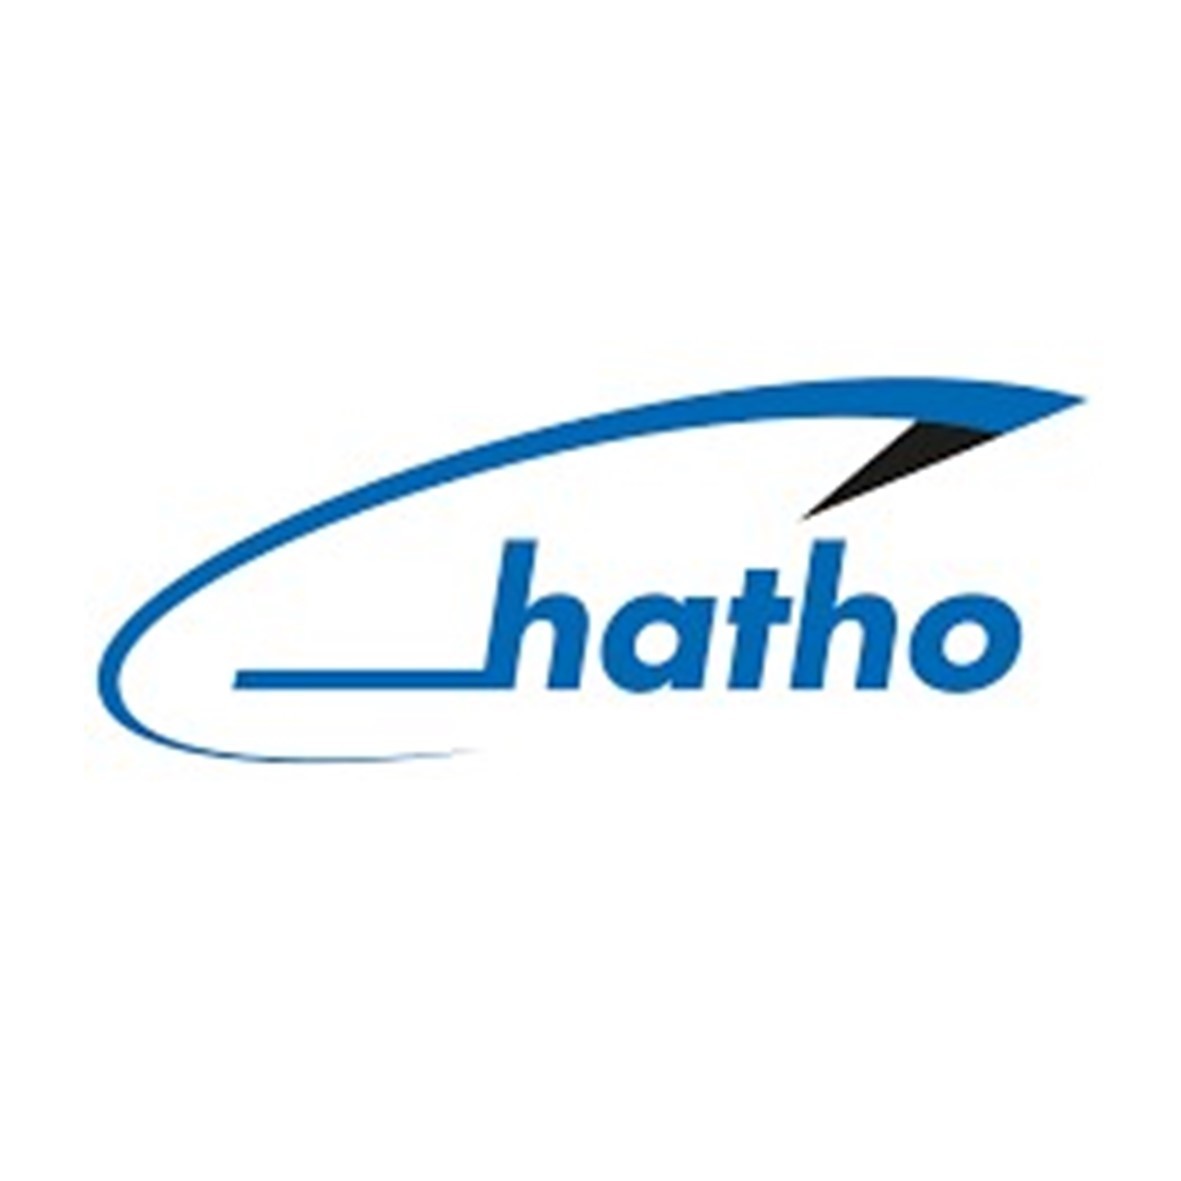 hatho